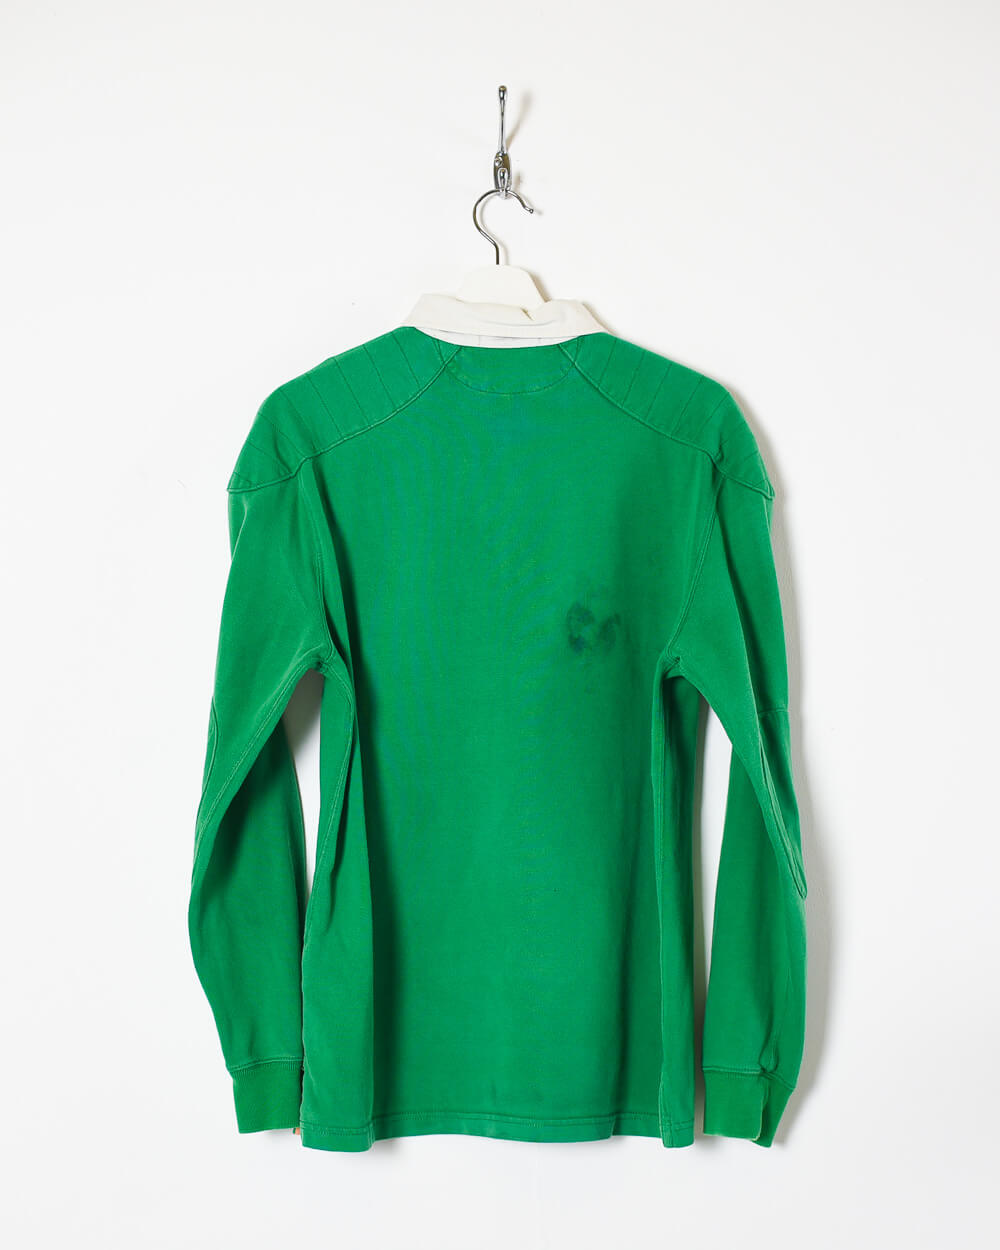 Green Ralph Lauren Rugby Shirt - Medium